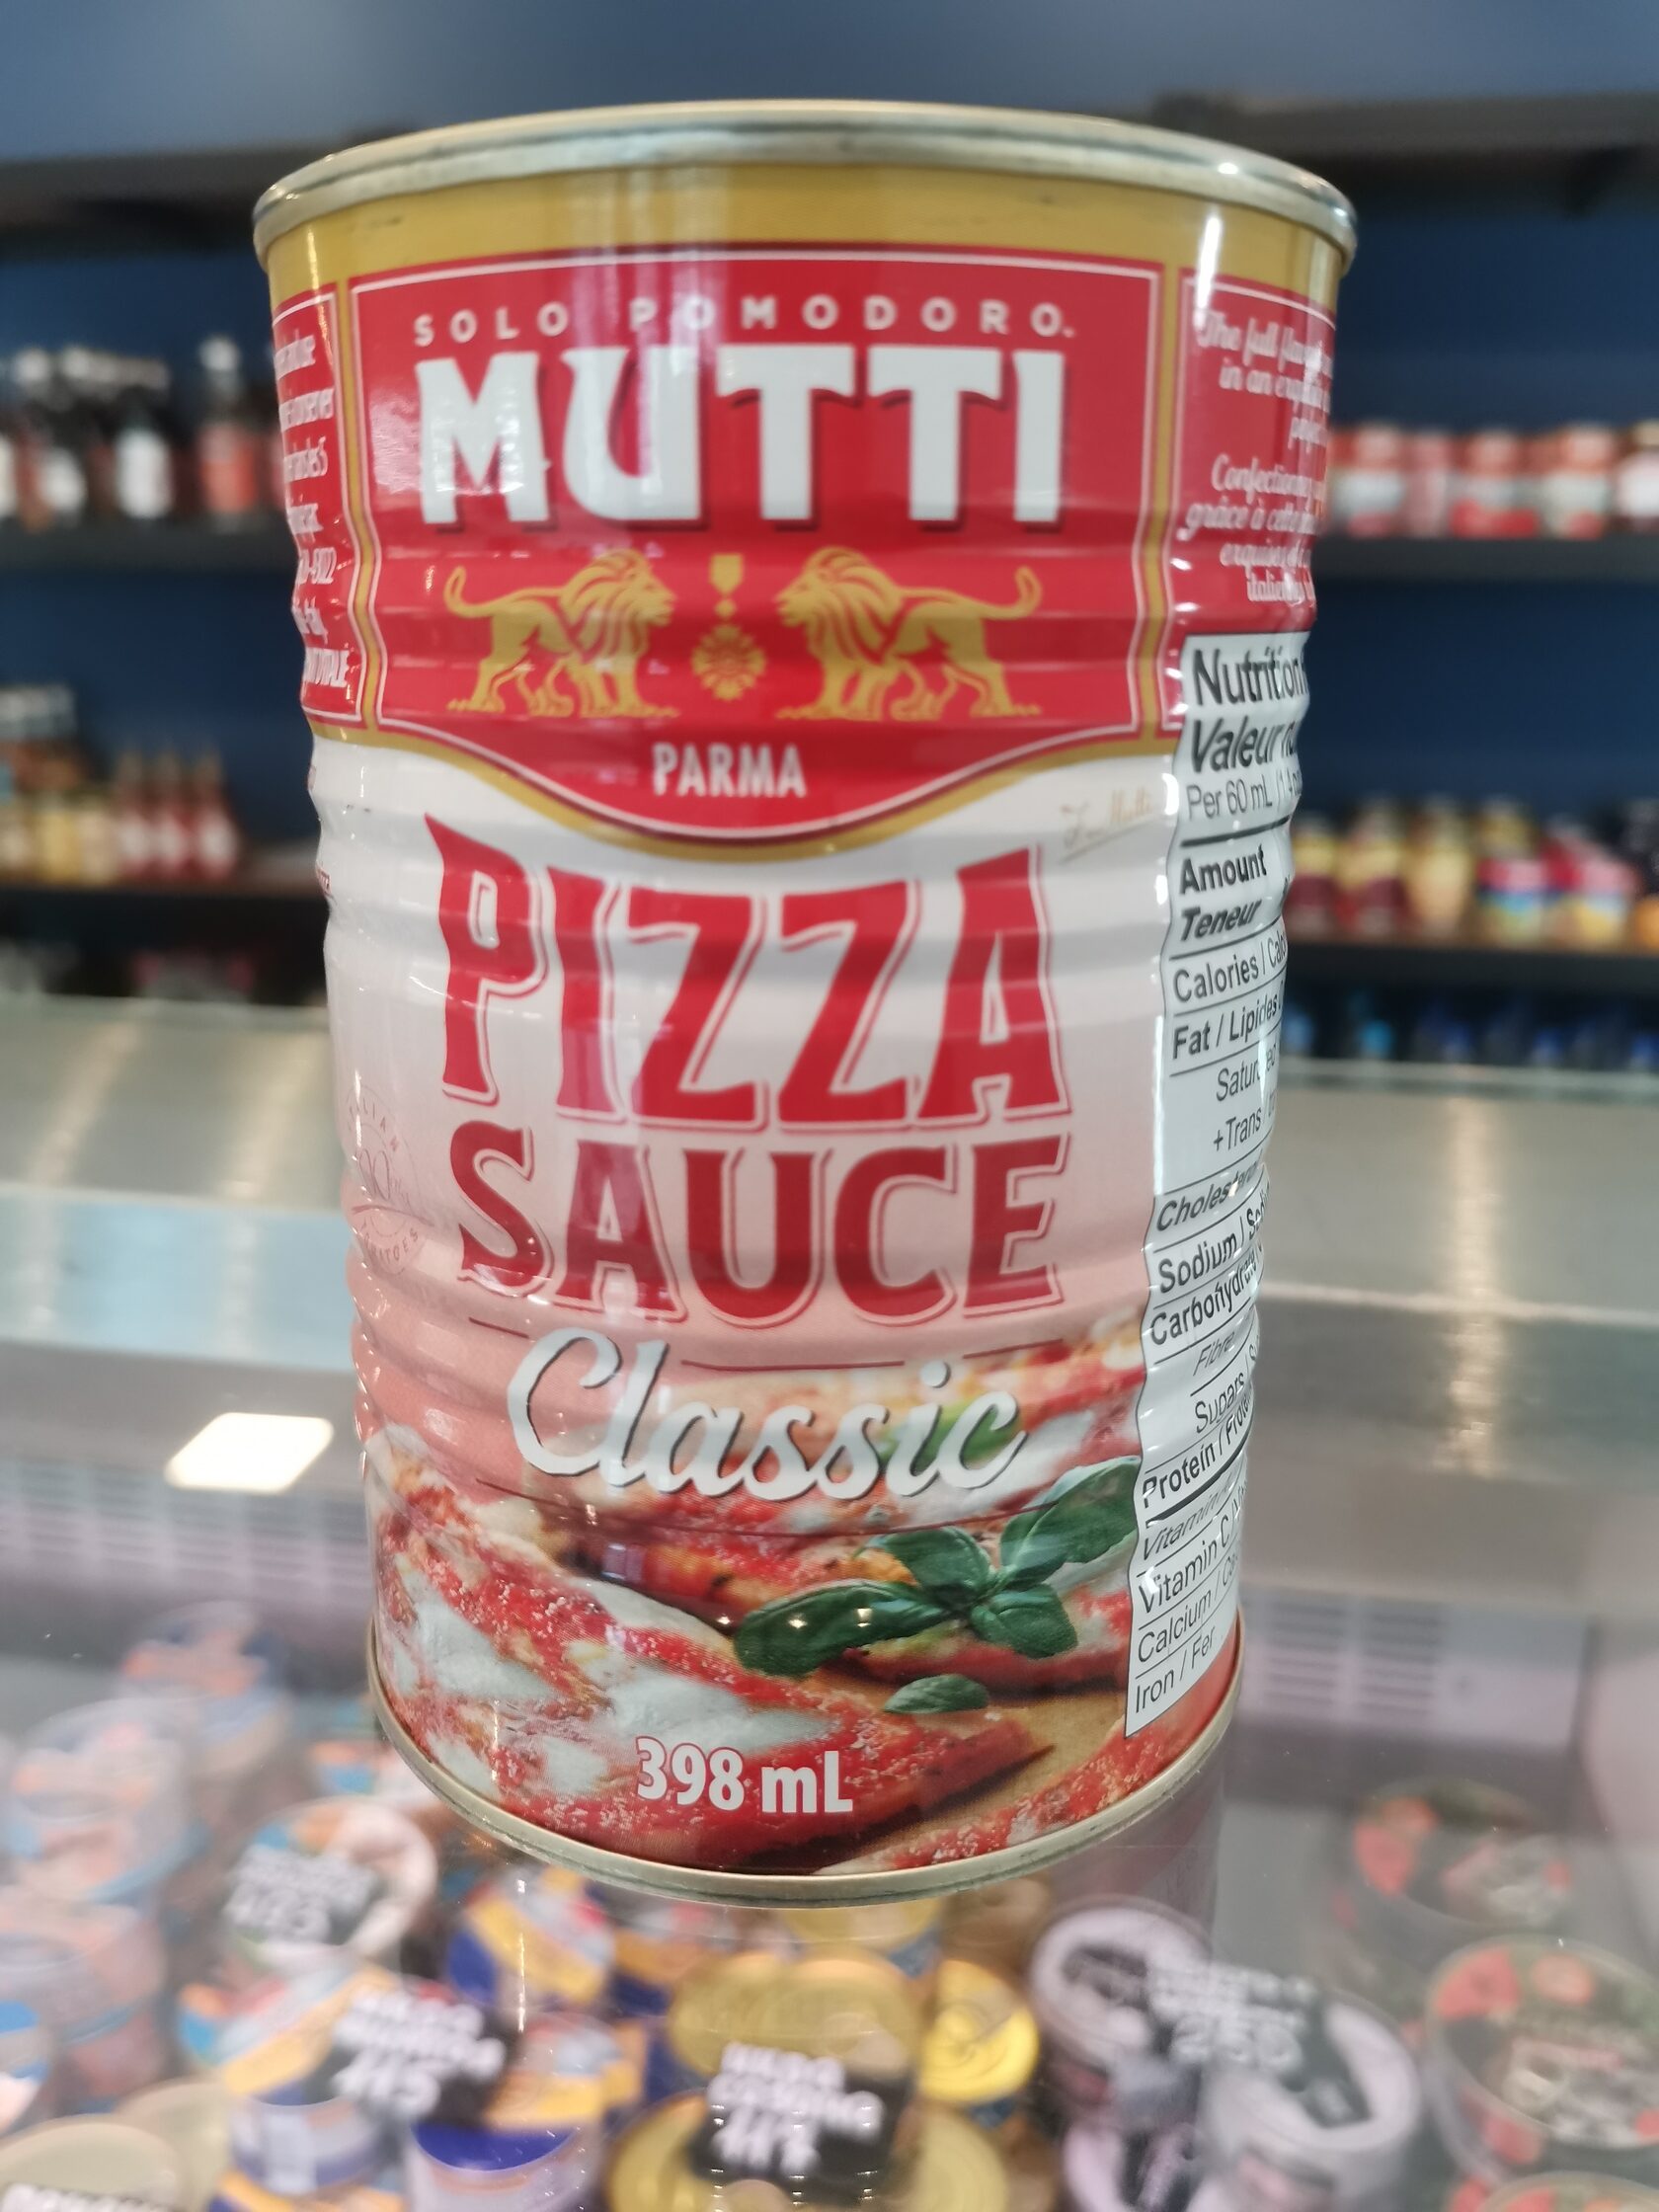 томатный соус для пиццы мутти классический 400 грамм фото 73